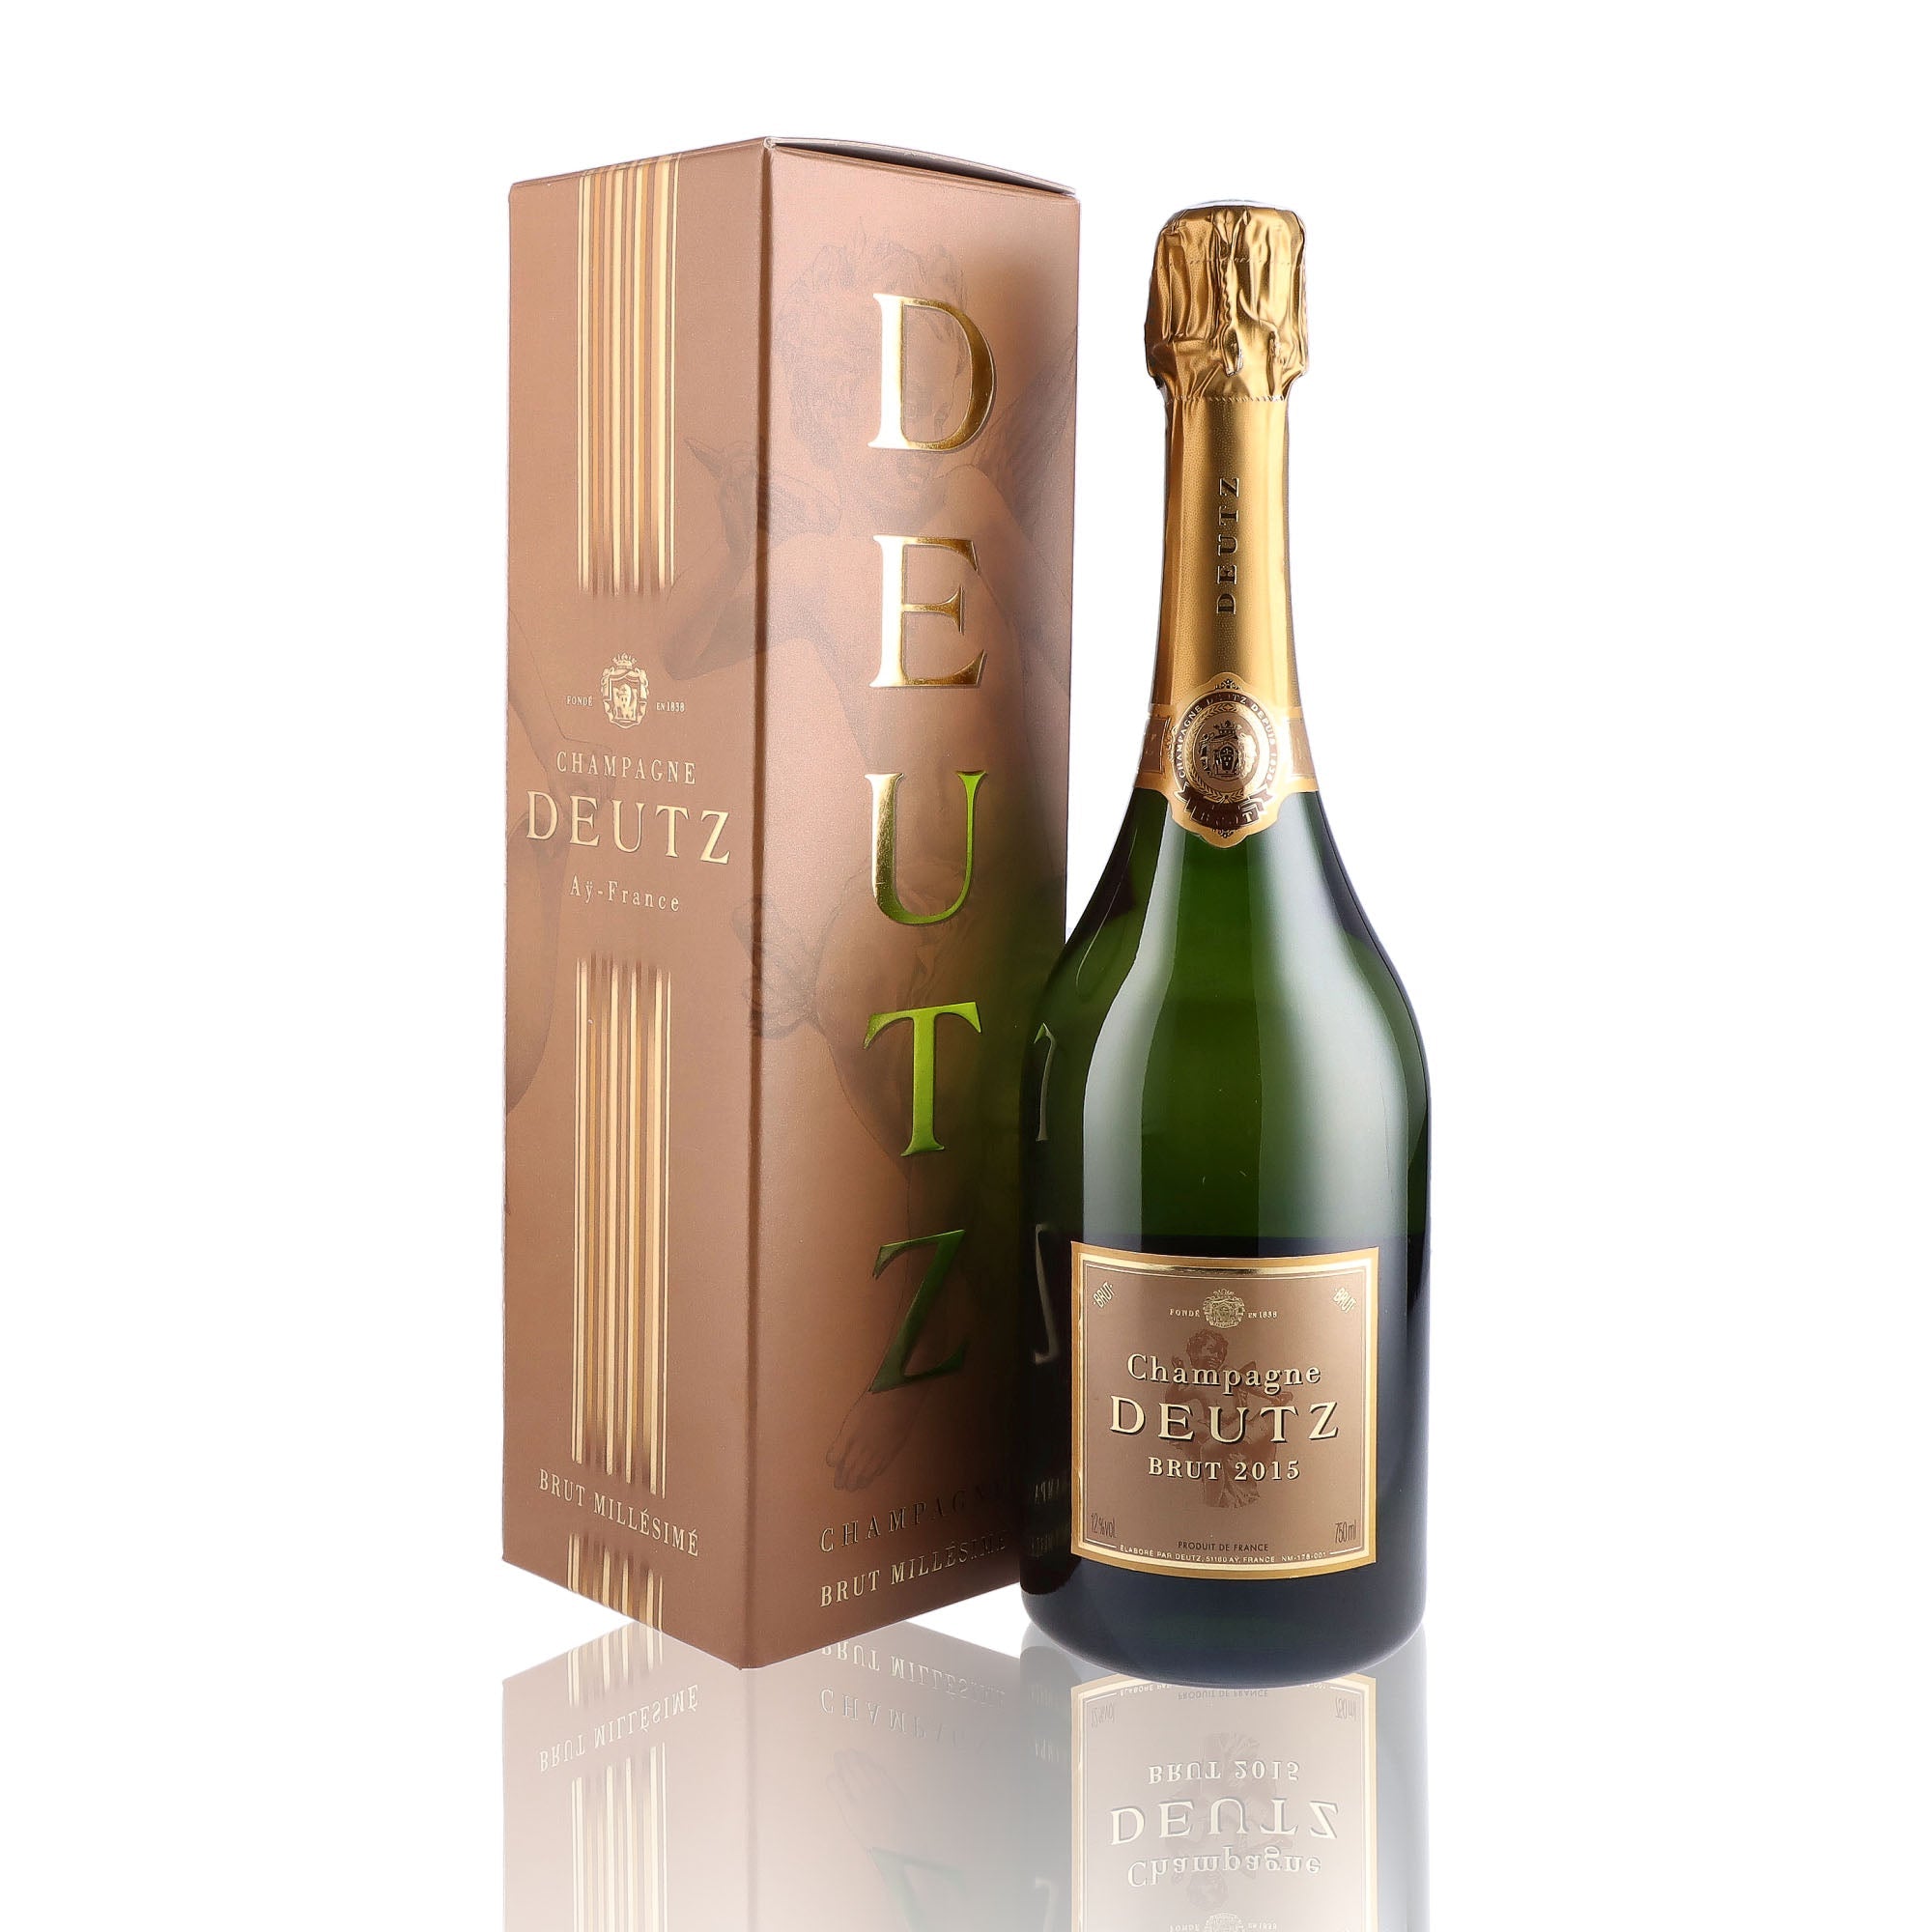 Une bouteille de champagne de la marque Deutz, de type brut, millésime 2015.